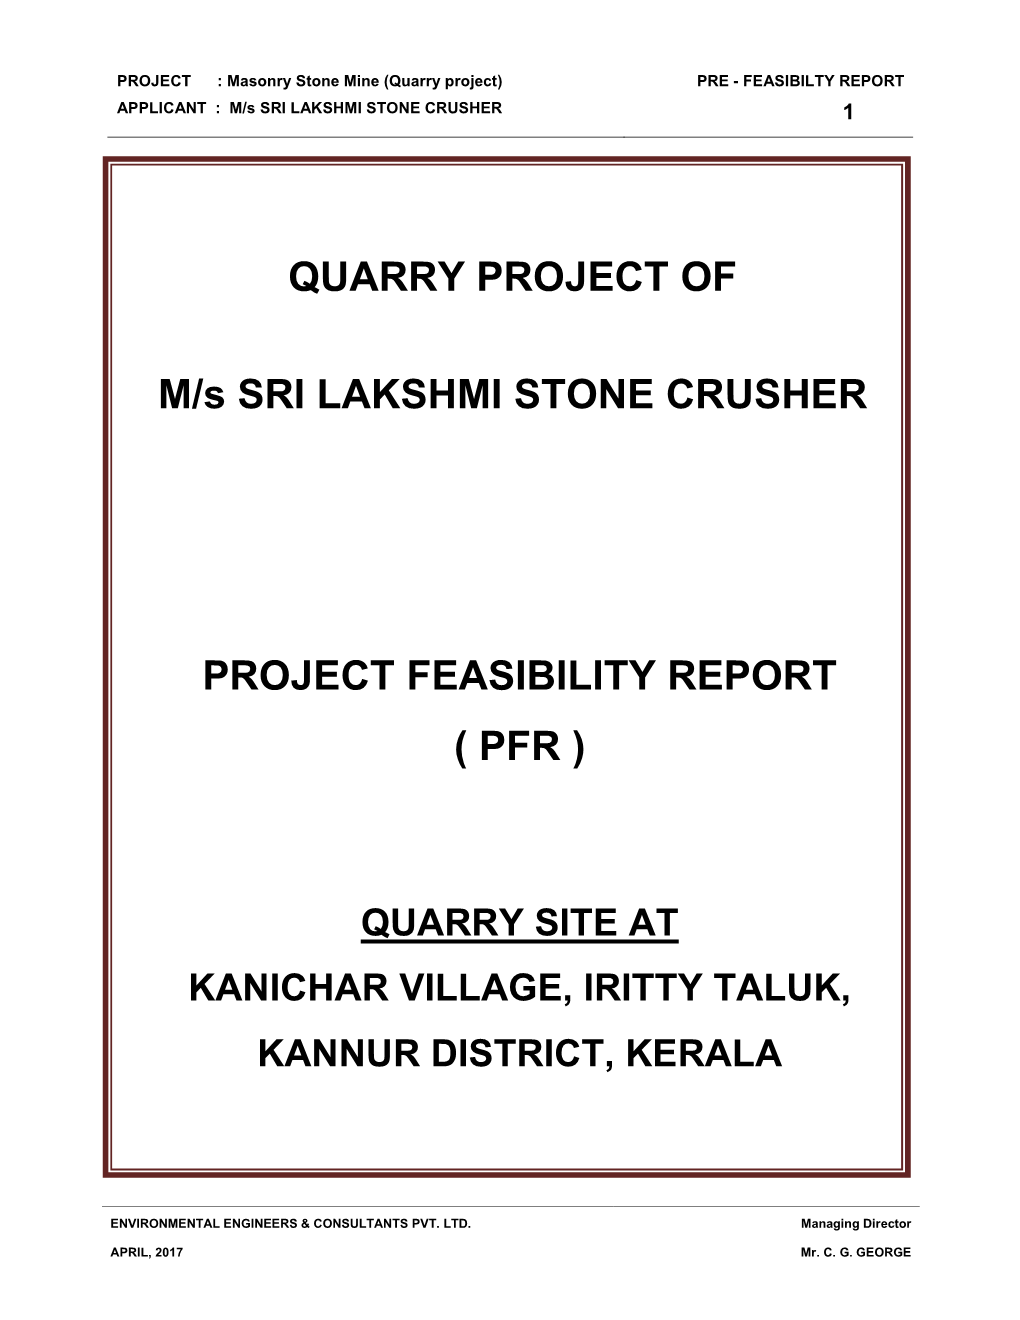 QUARRY PROJECT of M/S SRI LAKSHMI STONE CRUSHER